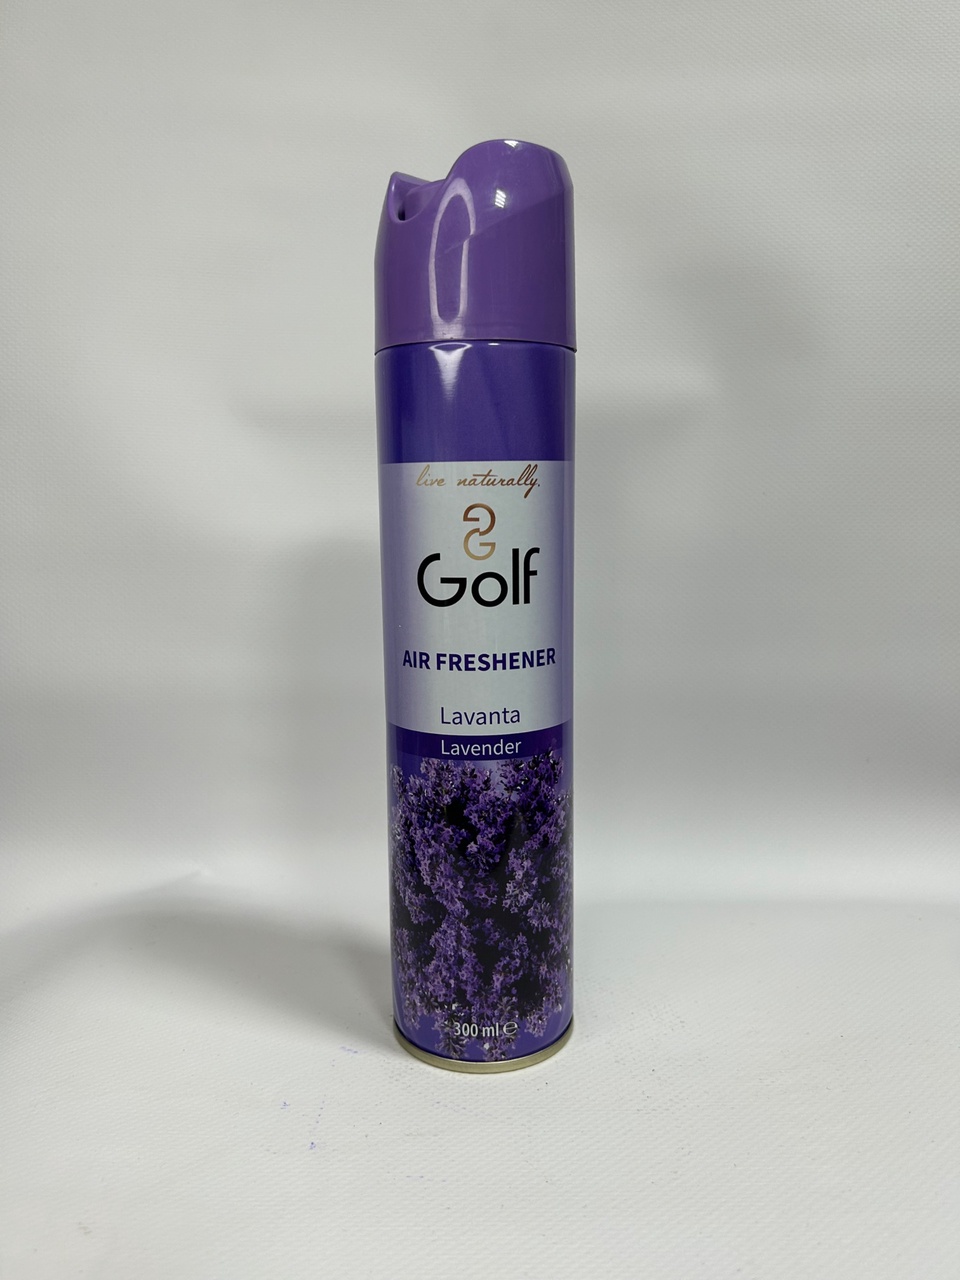 Освежитель воздуха Golf с ароматом «Лаванда» - 130 ₽, заказать онлайн.